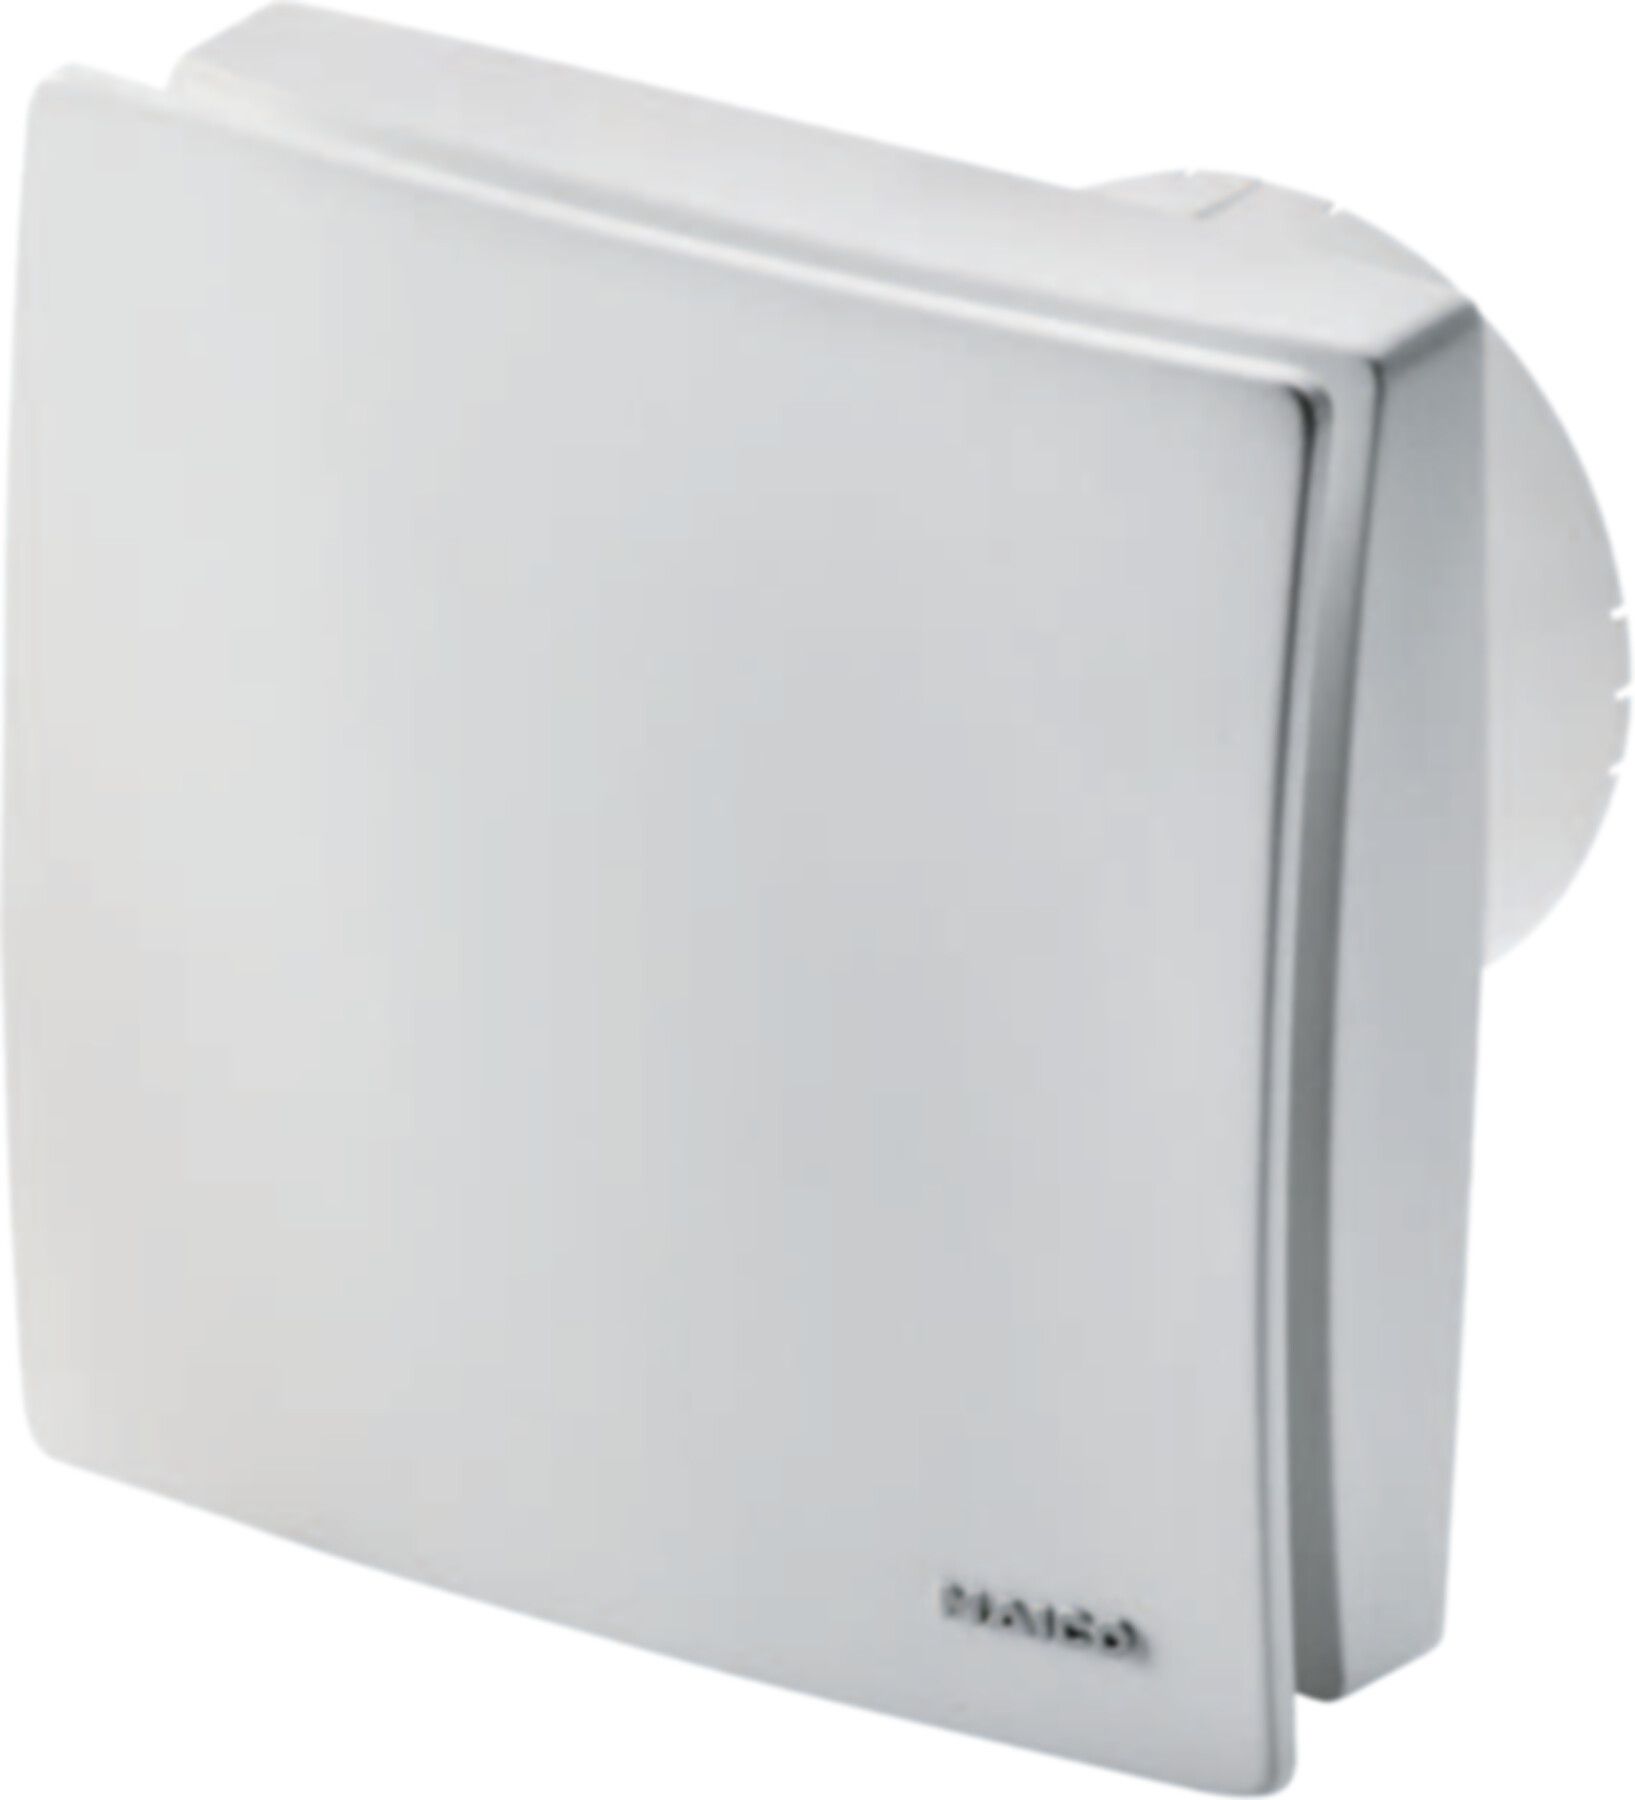 Bad / WC-Ventilatoren COMPETAIR Maico ECA 100 ipro K